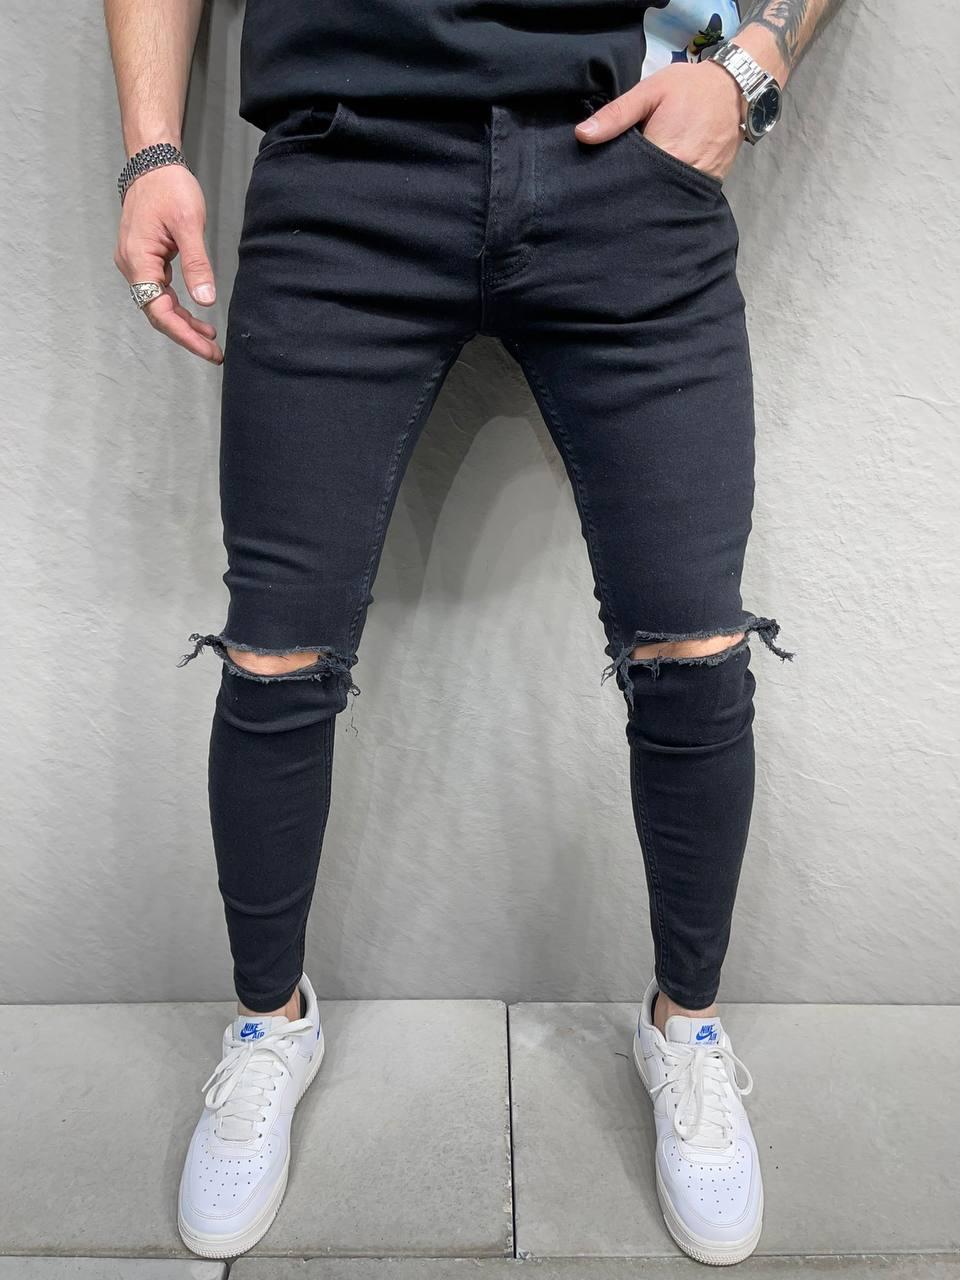 Чоловічі стильні звужені джинси чорного кольору базові з дірками на колінах